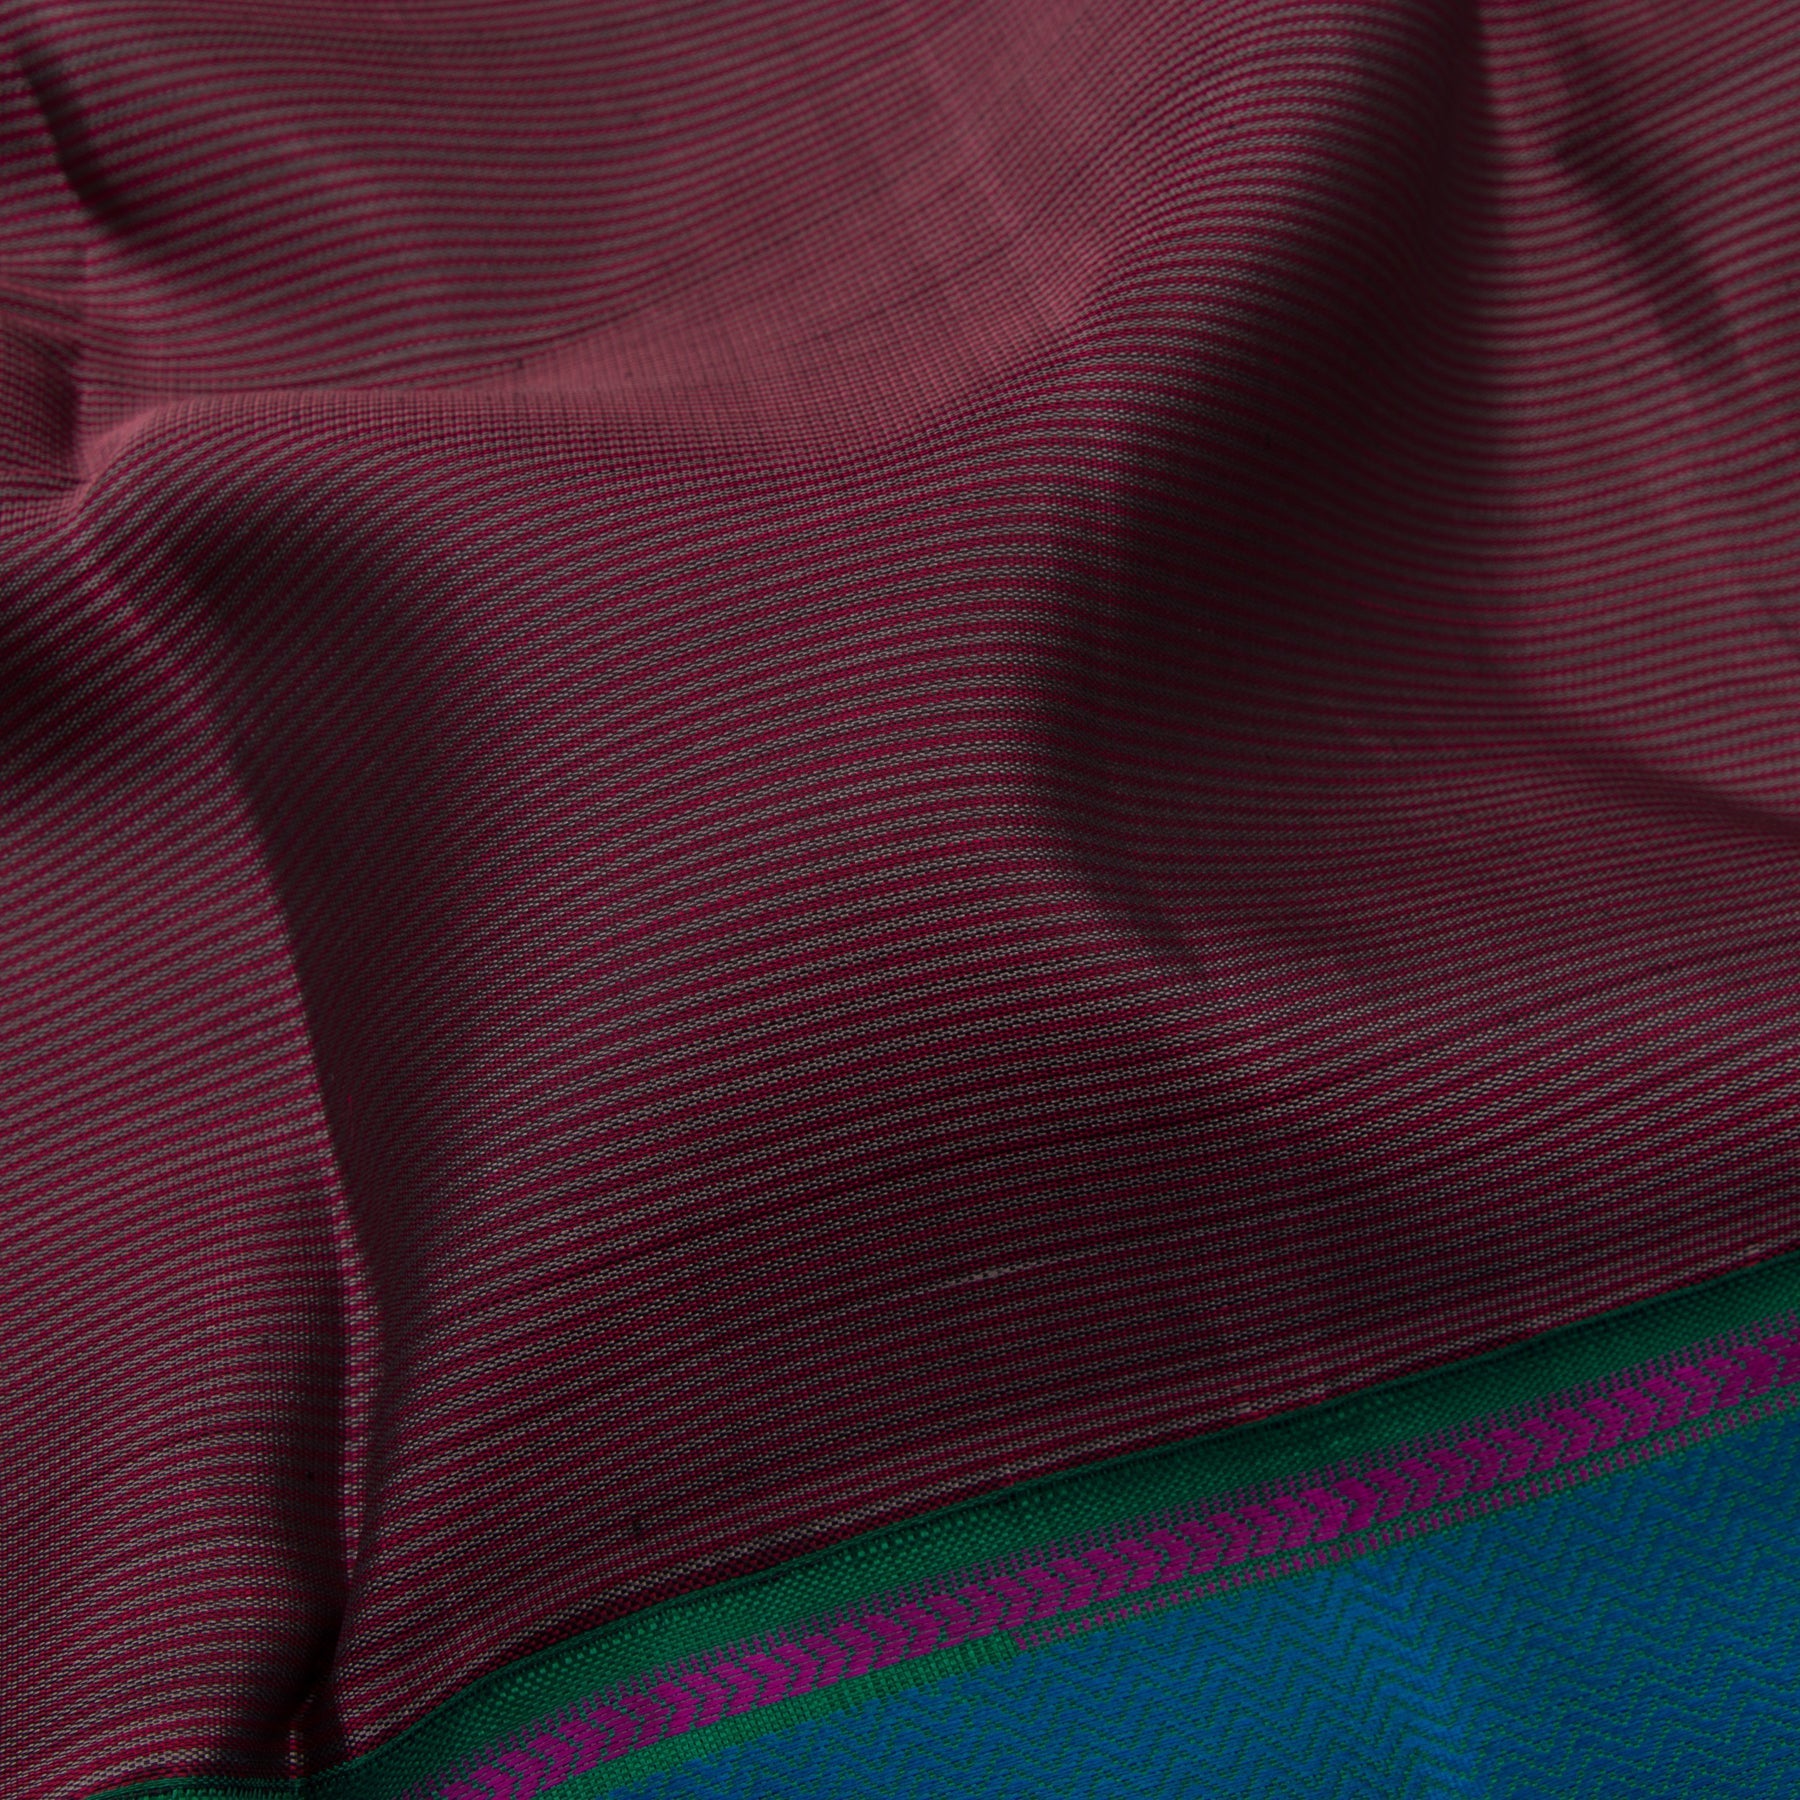 Kanakavalli Kanjivaram Silk Sari 21-595-HS001-07962 - Fabric View